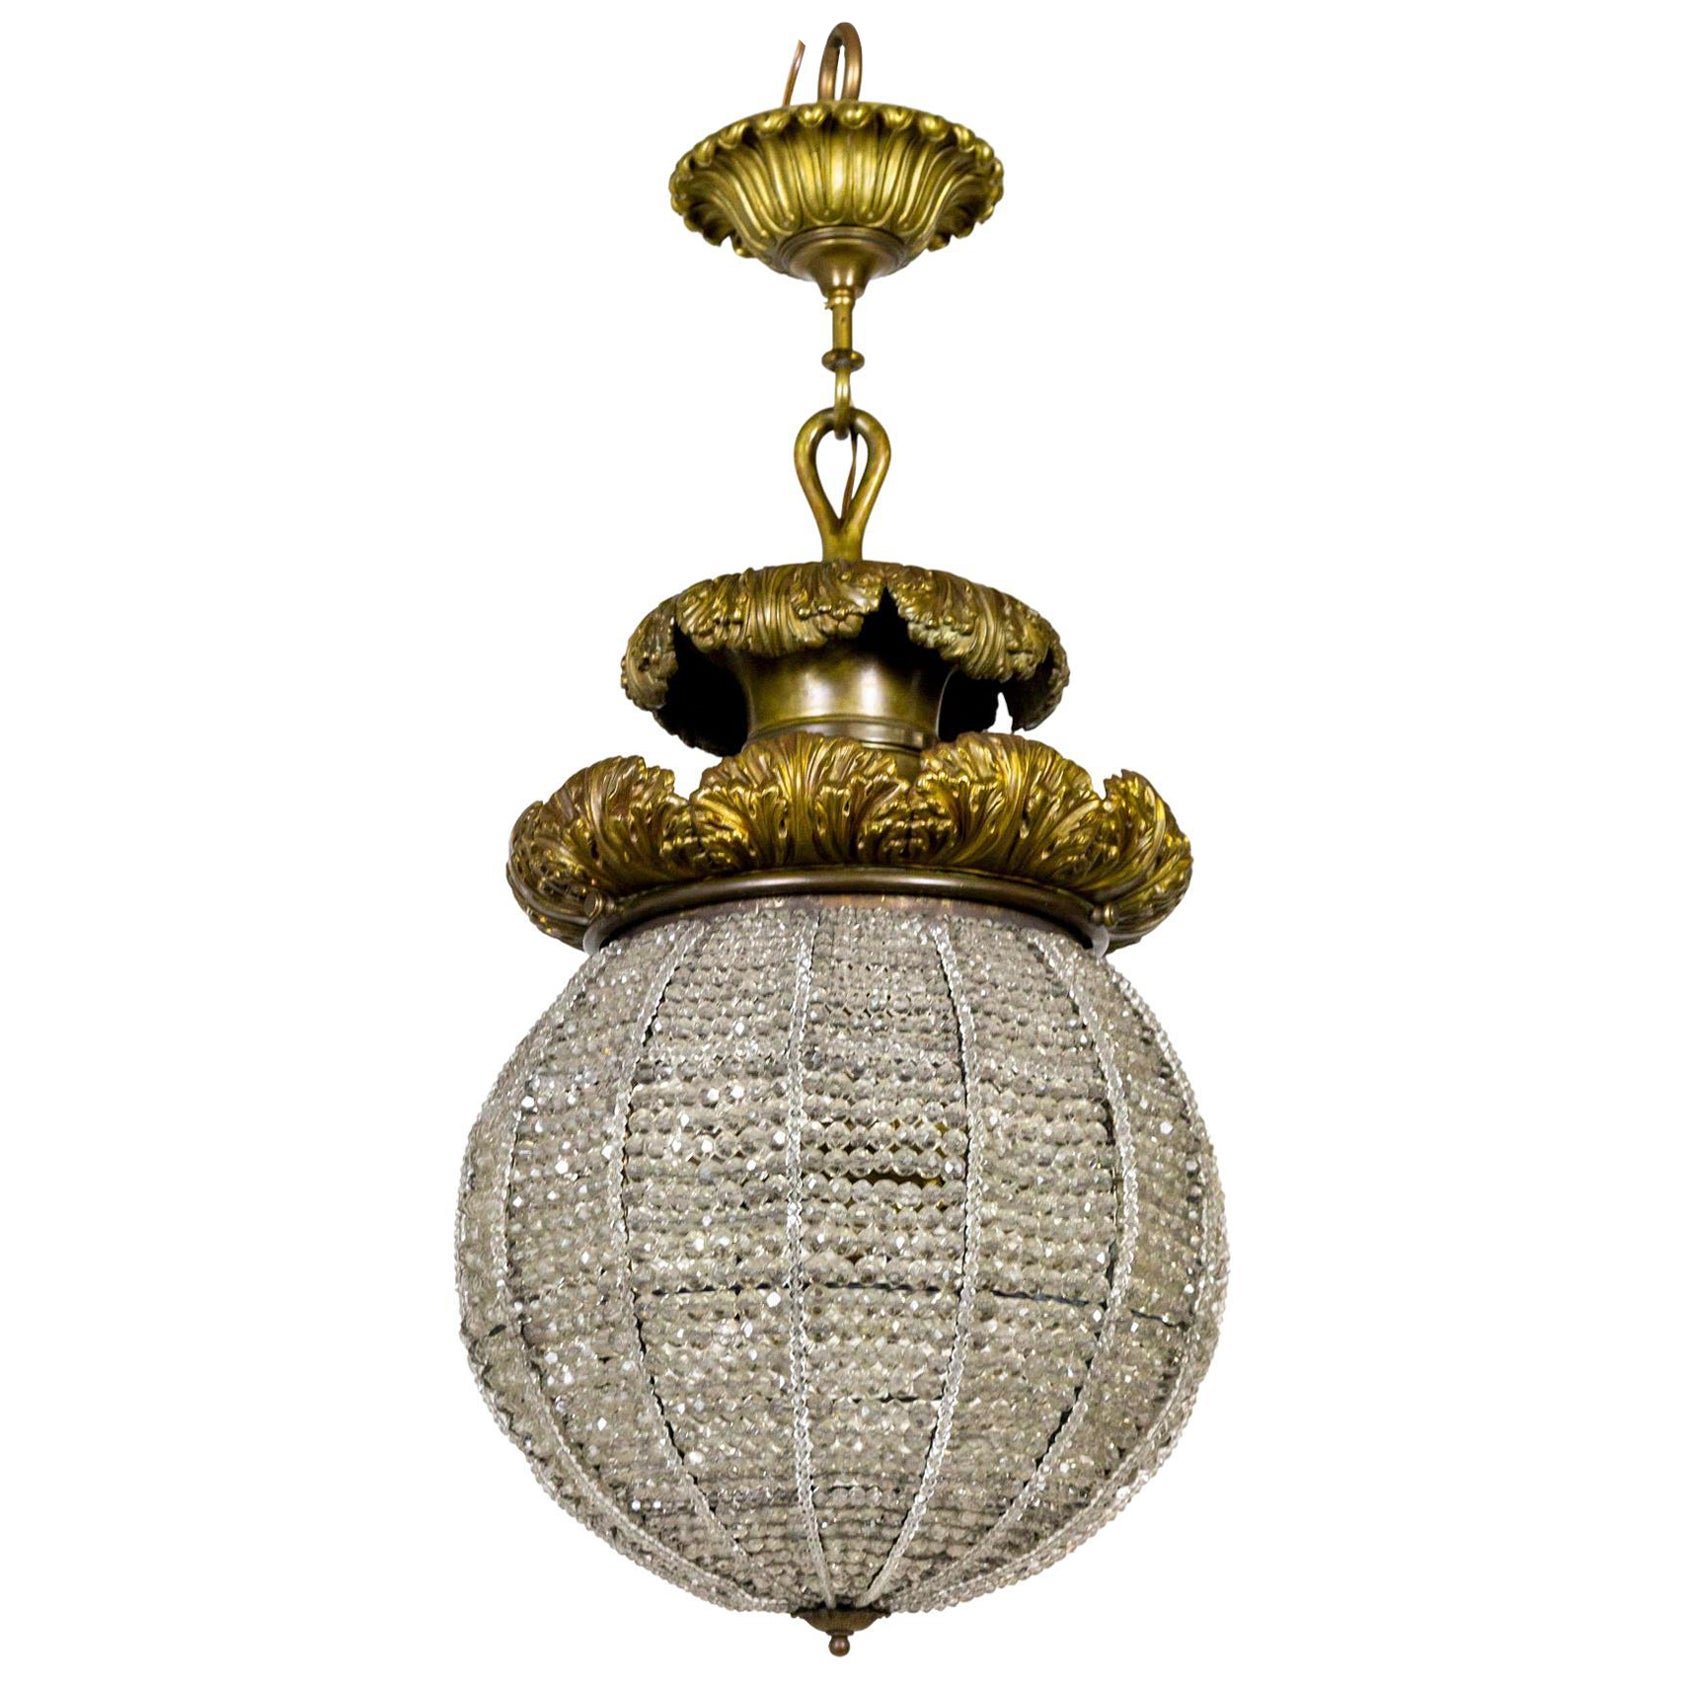 Grand luminaire Belle Epoque avec sphère en cristal perlé et feuillage de bronze